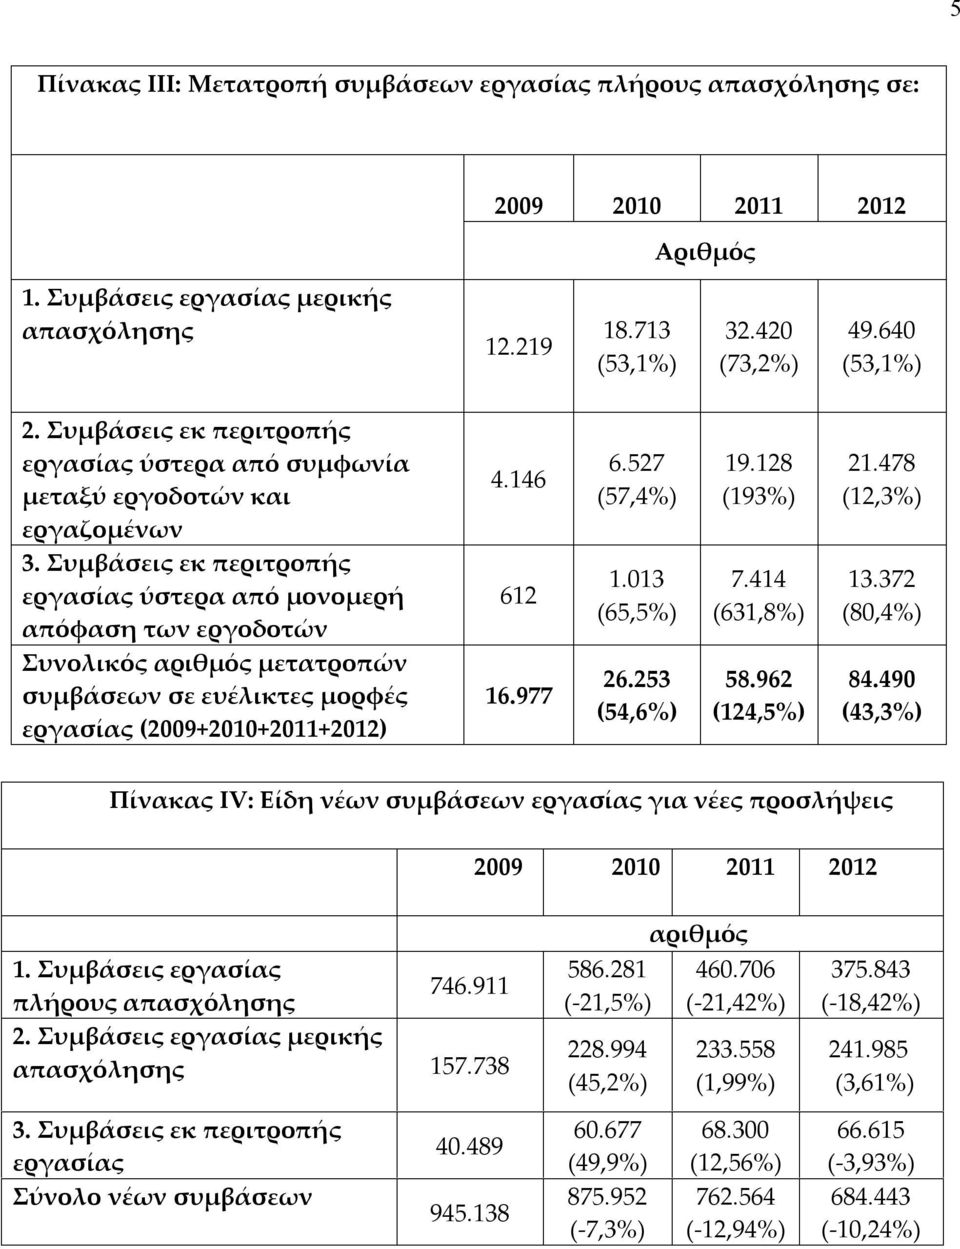 Συμβάσεις εκ περιτροπής εργασίας ύστερα από μονομερή απόφαση των εργοδοτών Συνολικός αριθμός μετατροπών συμβάσεων σε ευέλικτες μορφές εργασίας (2009+2010+2011+2012) 4.146 612 16.977 6.527 (57,4%) 1.